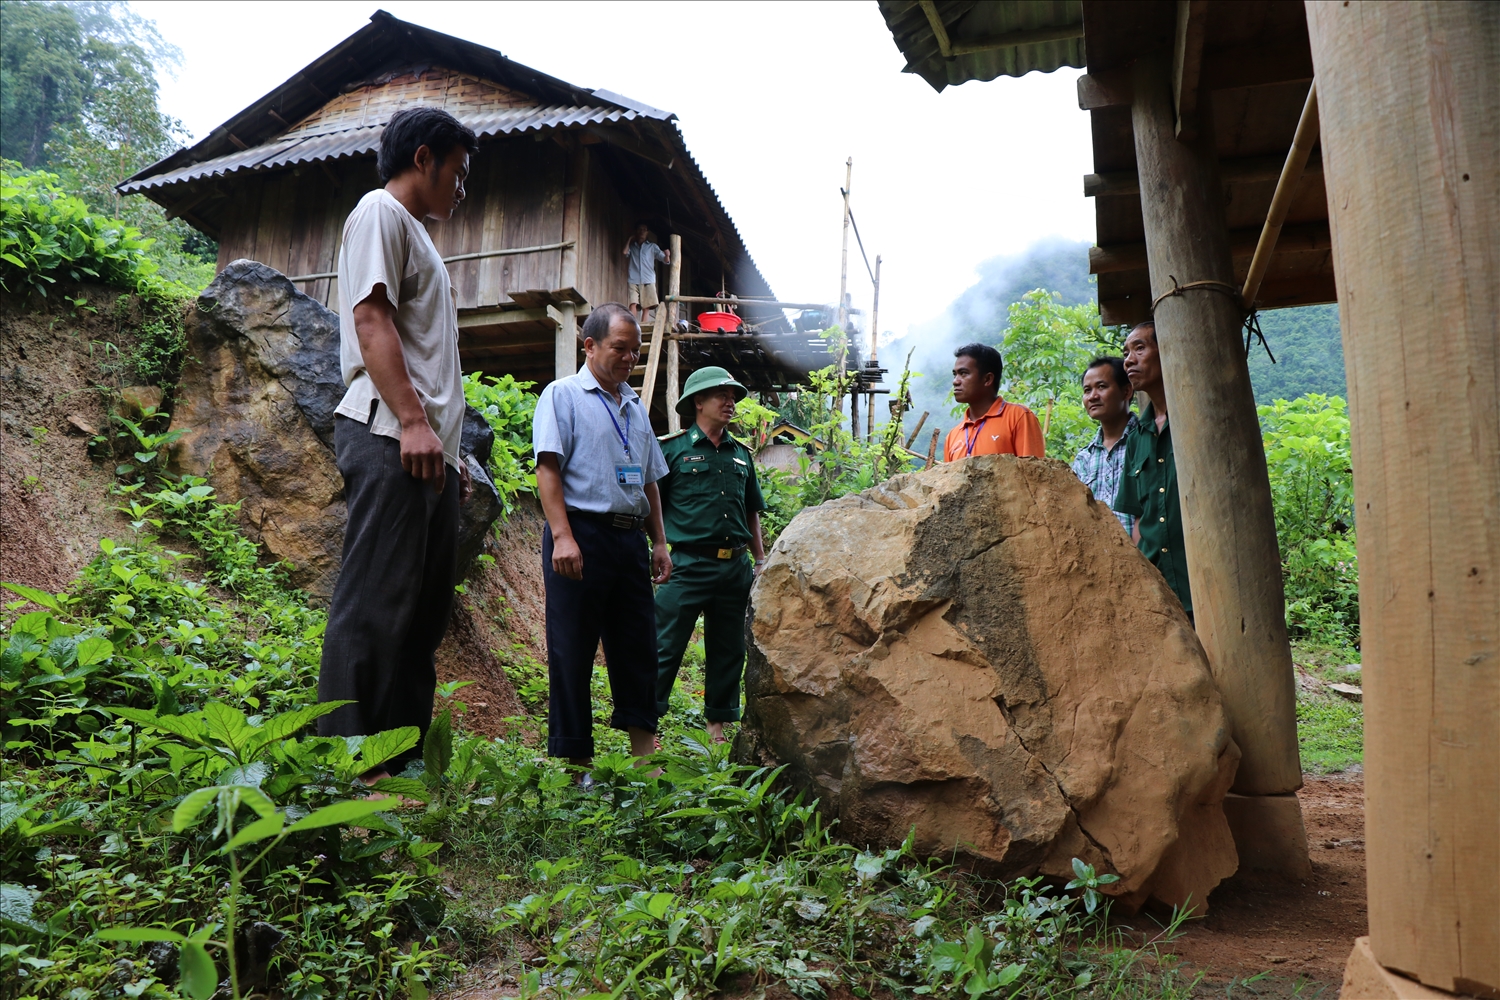 Chính quyền địa phương và các chiến sỹ quân đội hỗ trợ người dân trong vụ sạt lở đất đá tại xã Pa Thơm, huyện Điện Biên